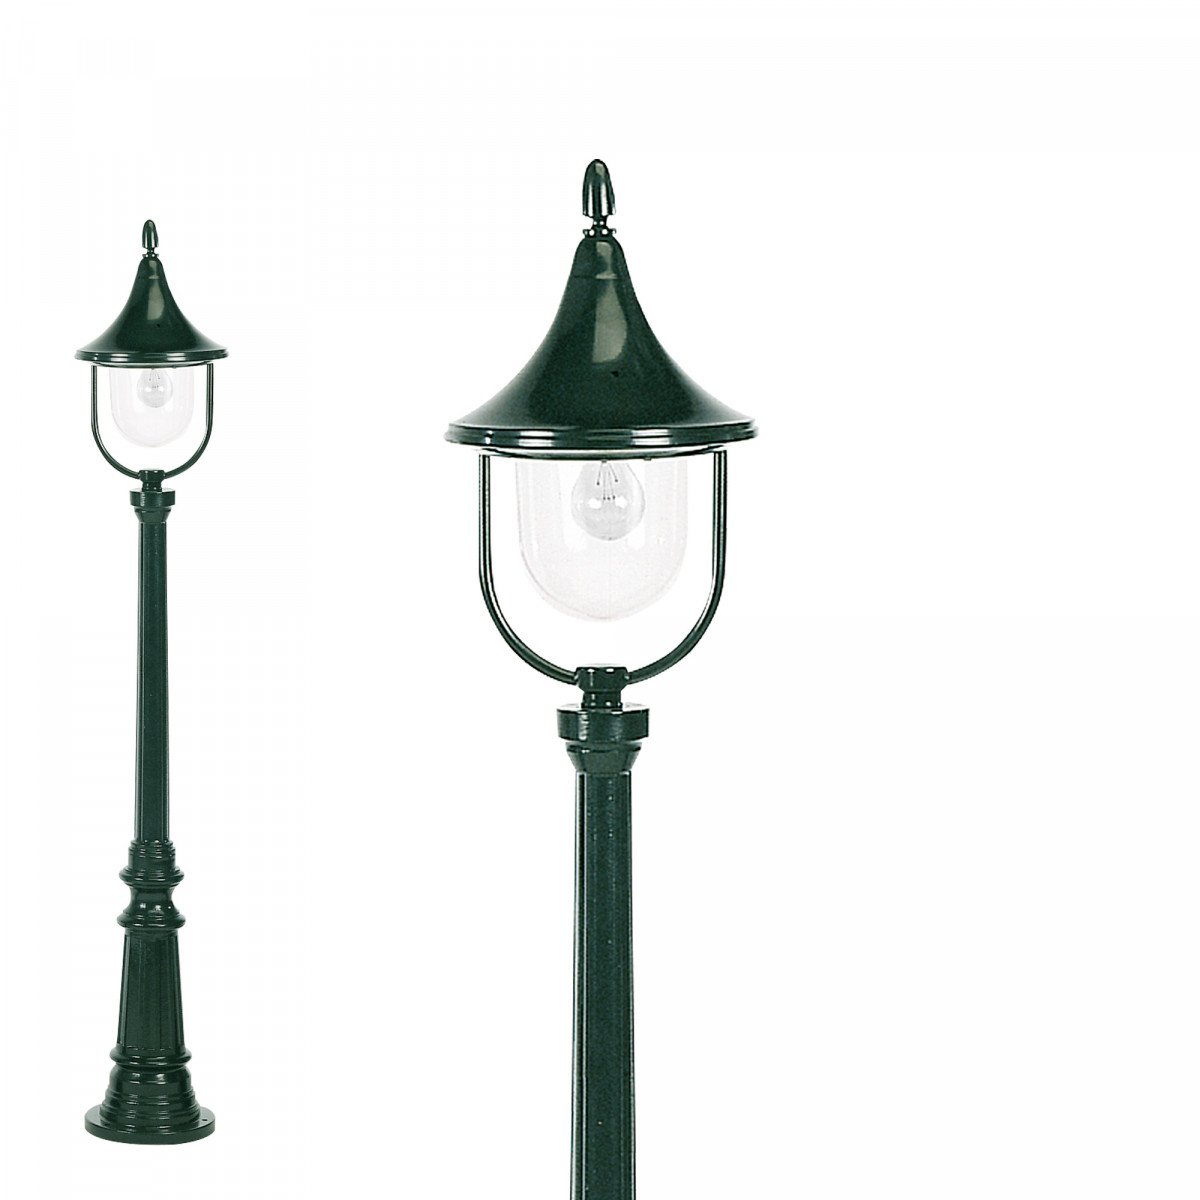 Lampadaire de jardin Ravenna de KS Lighting avec lanterne ronde